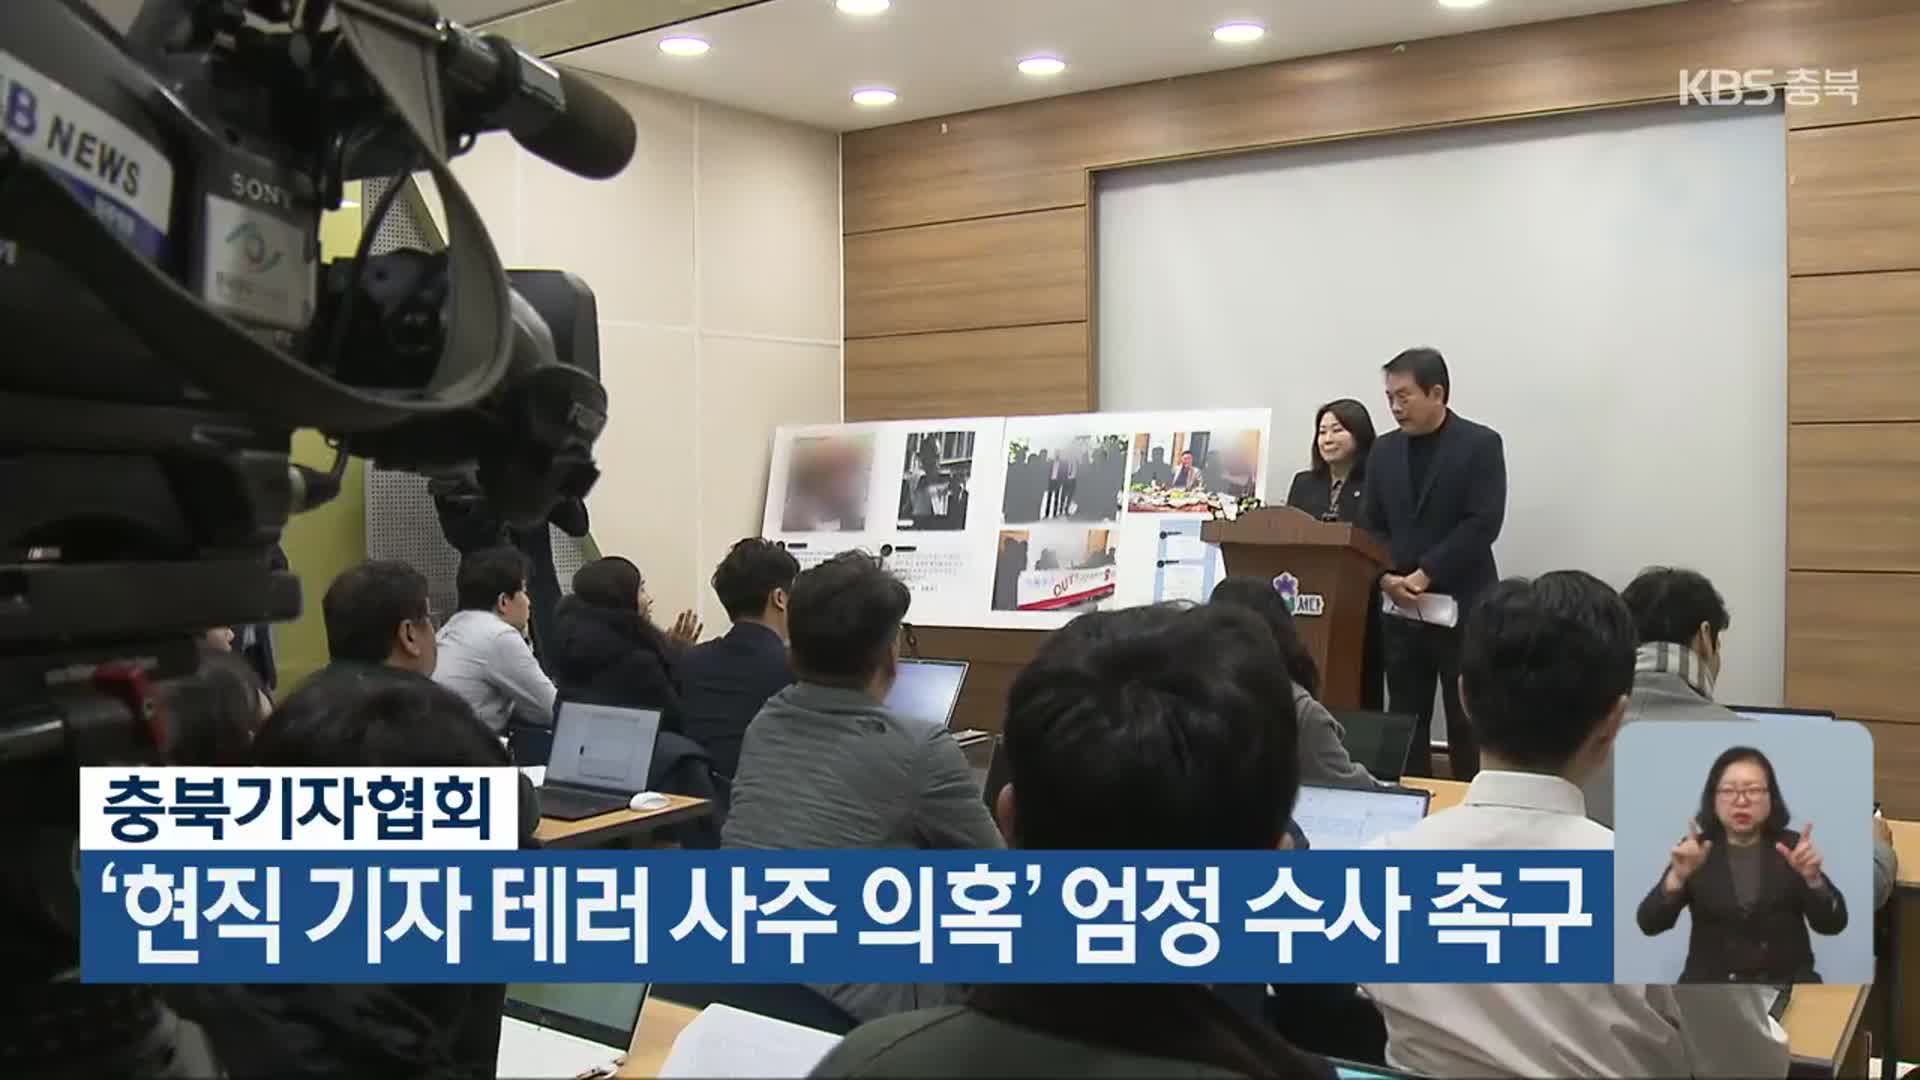 충북기자협회, ‘현직 기자 테러 사주 의혹’ 엄정 수사 촉구